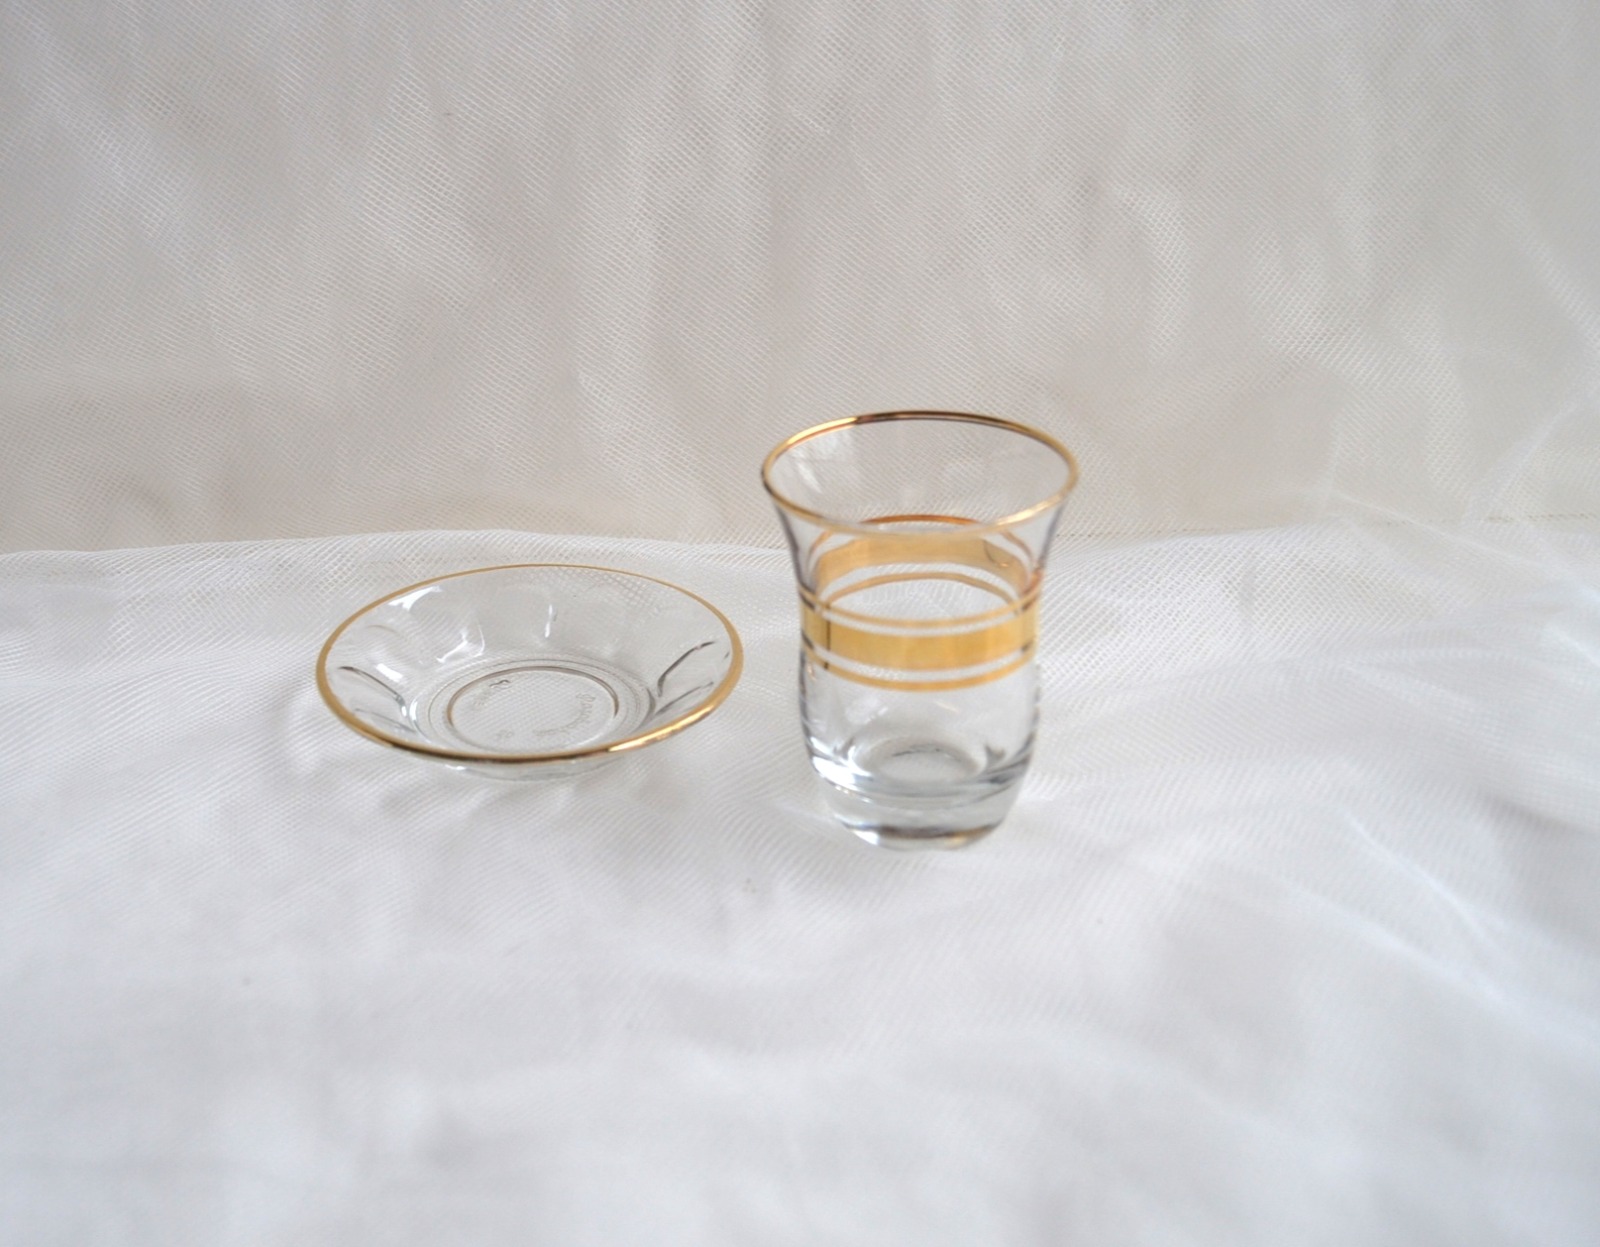 Türkisches Teeglas mit Teller 12-teilig, 6 Tassen, 6 Teller 2